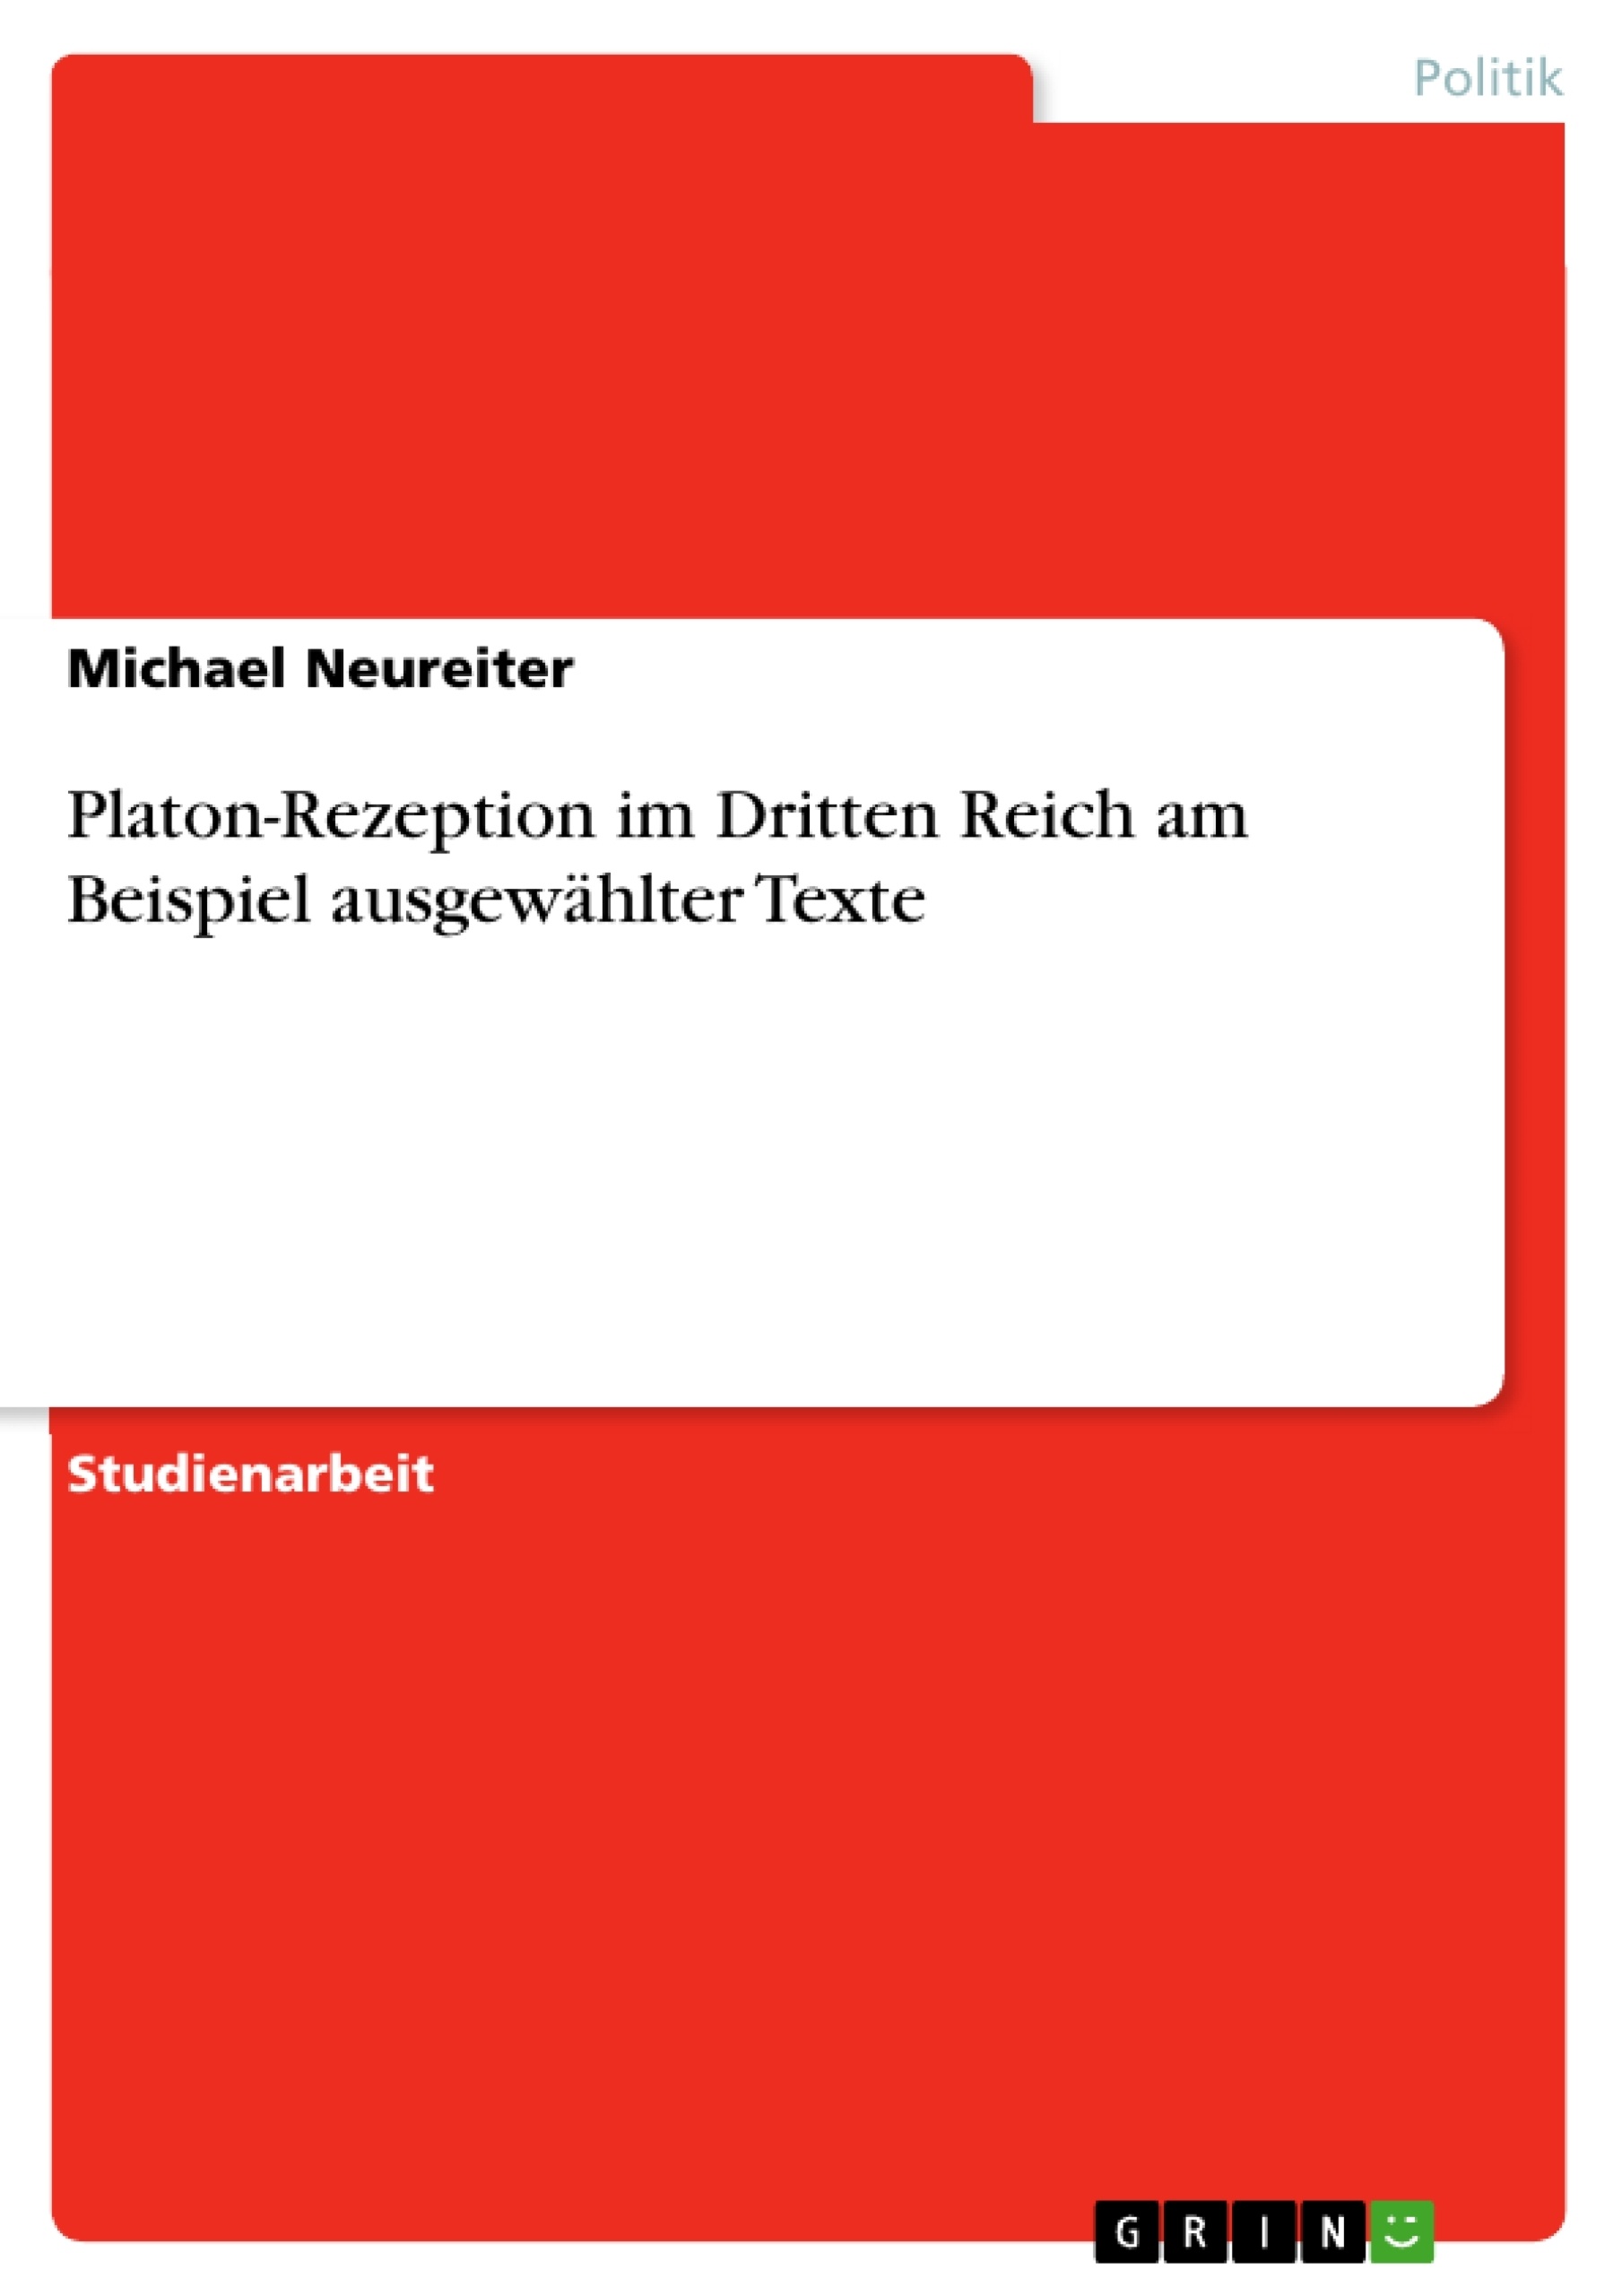 Título: Platon-Rezeption im Dritten Reich am Beispiel ausgewählter Texte